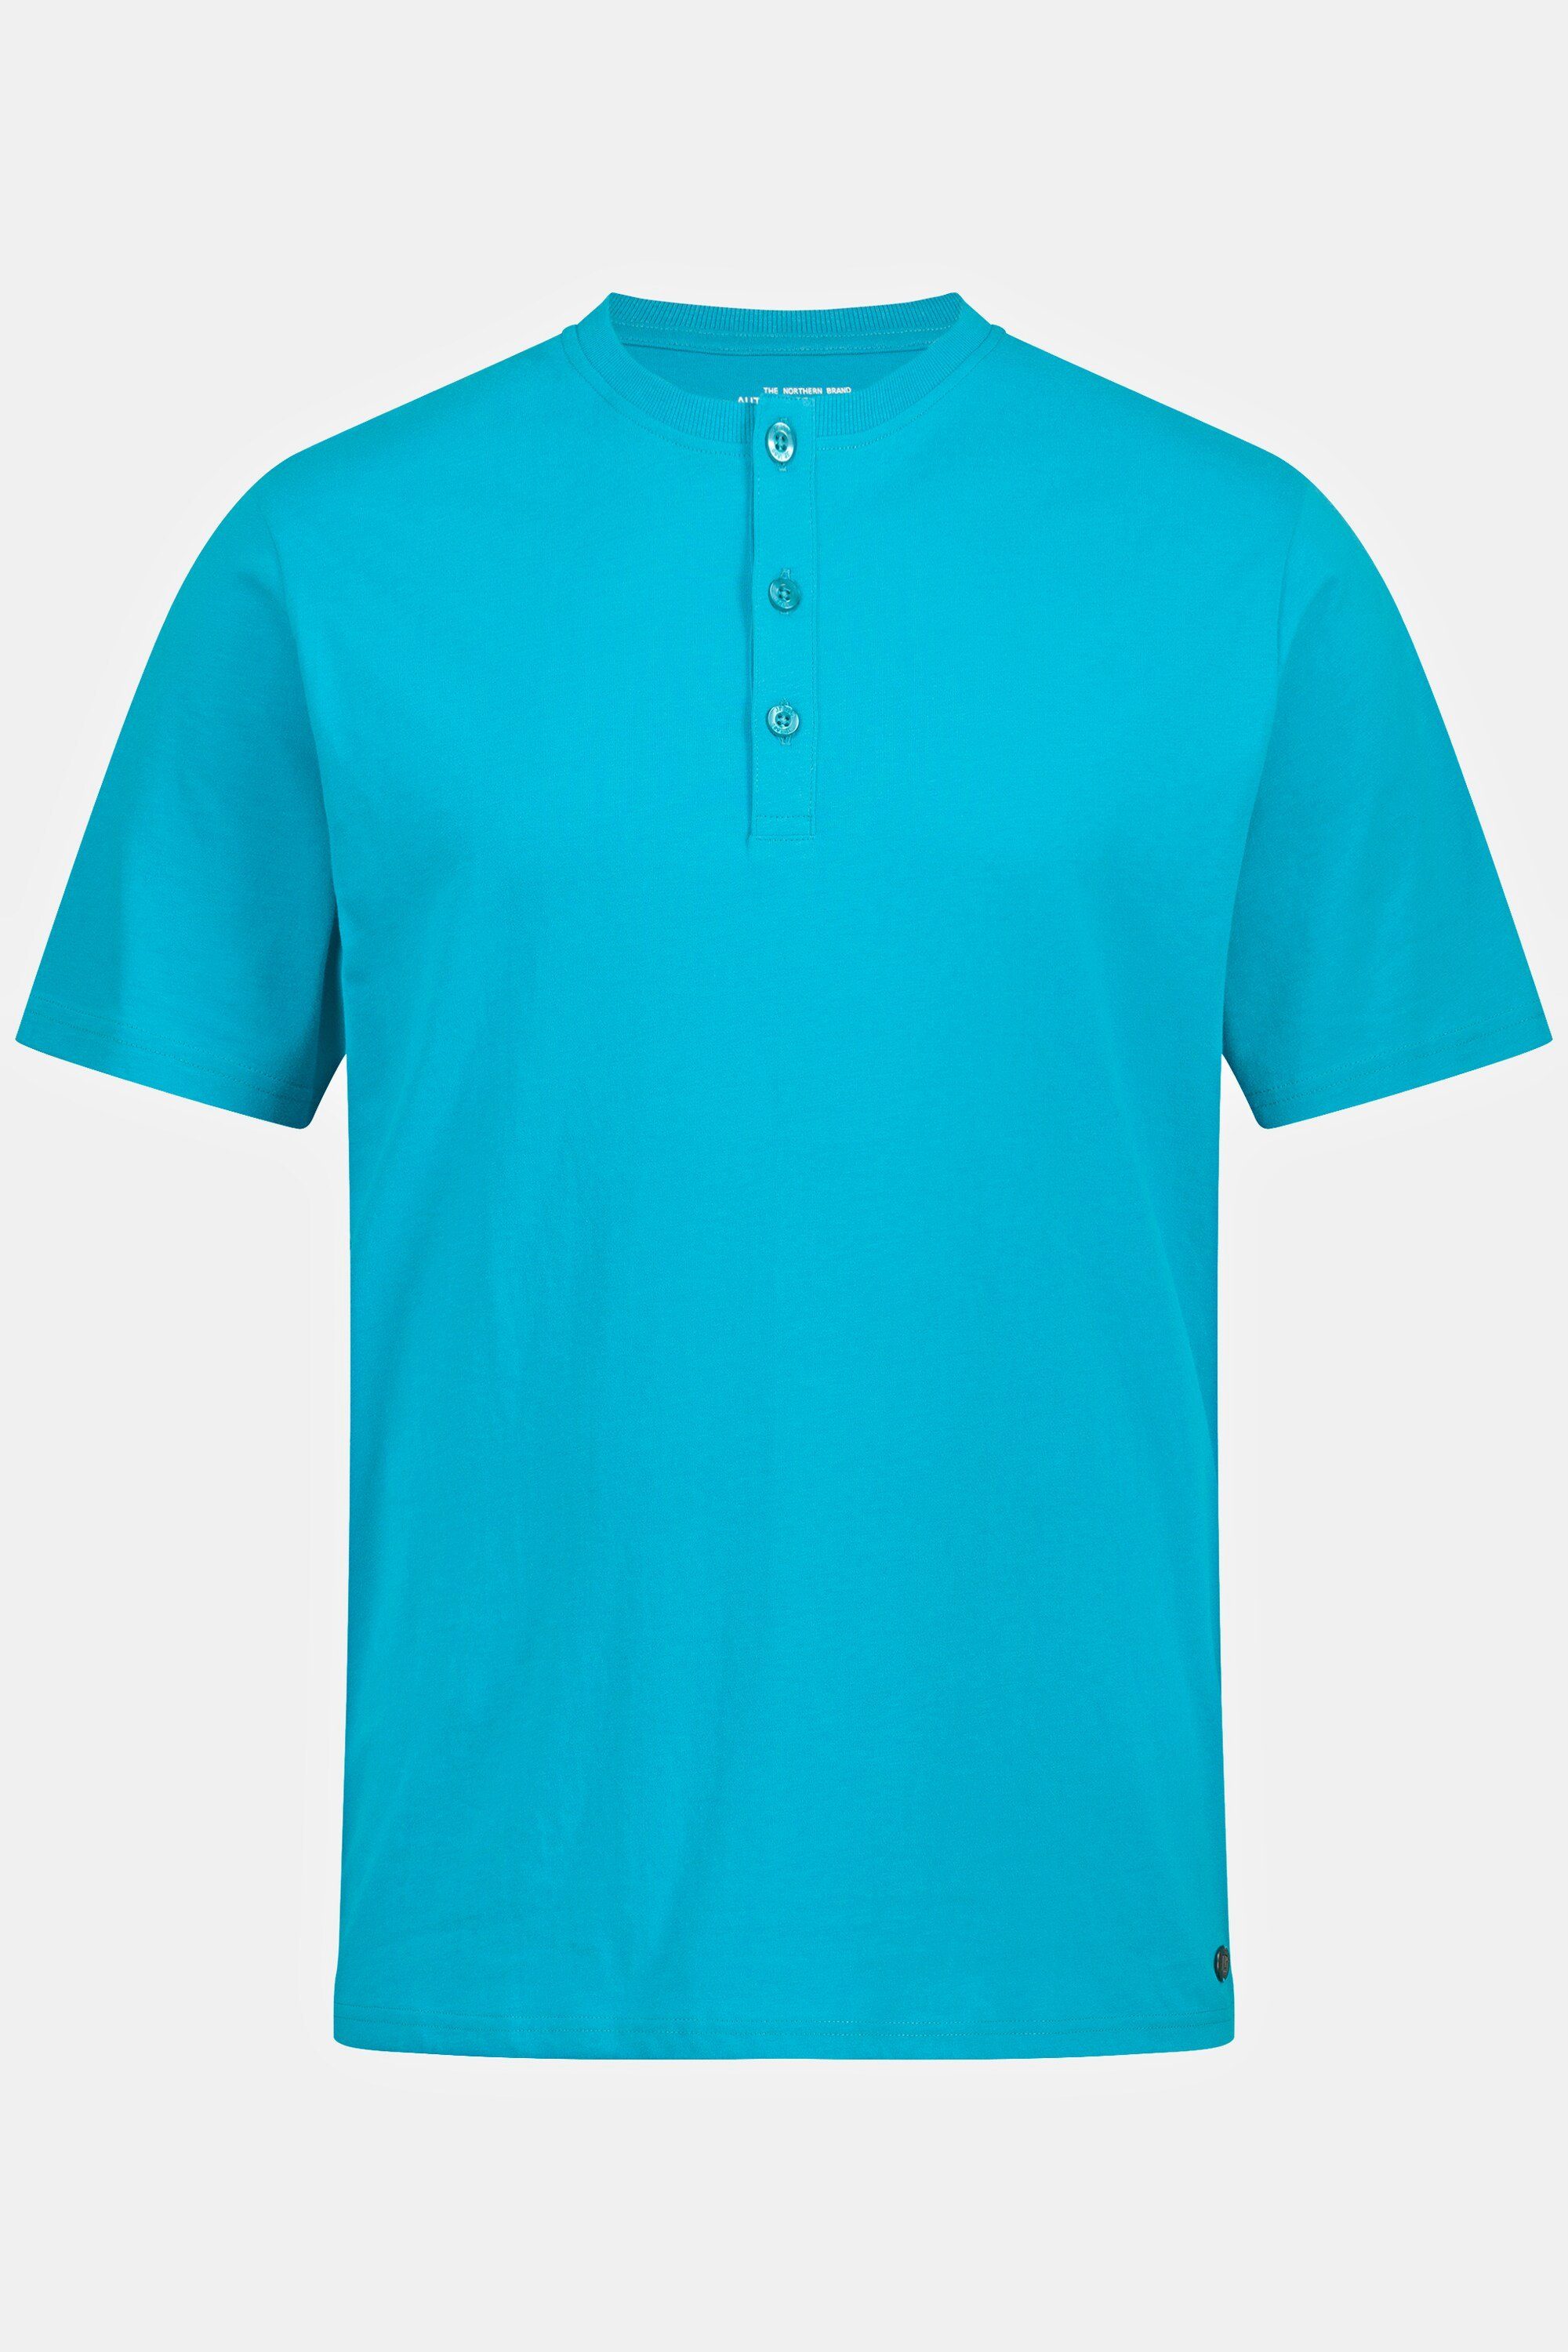 Basic JP1880 Henley dunkles Halbarm türkis T-Shirt Knopfleiste